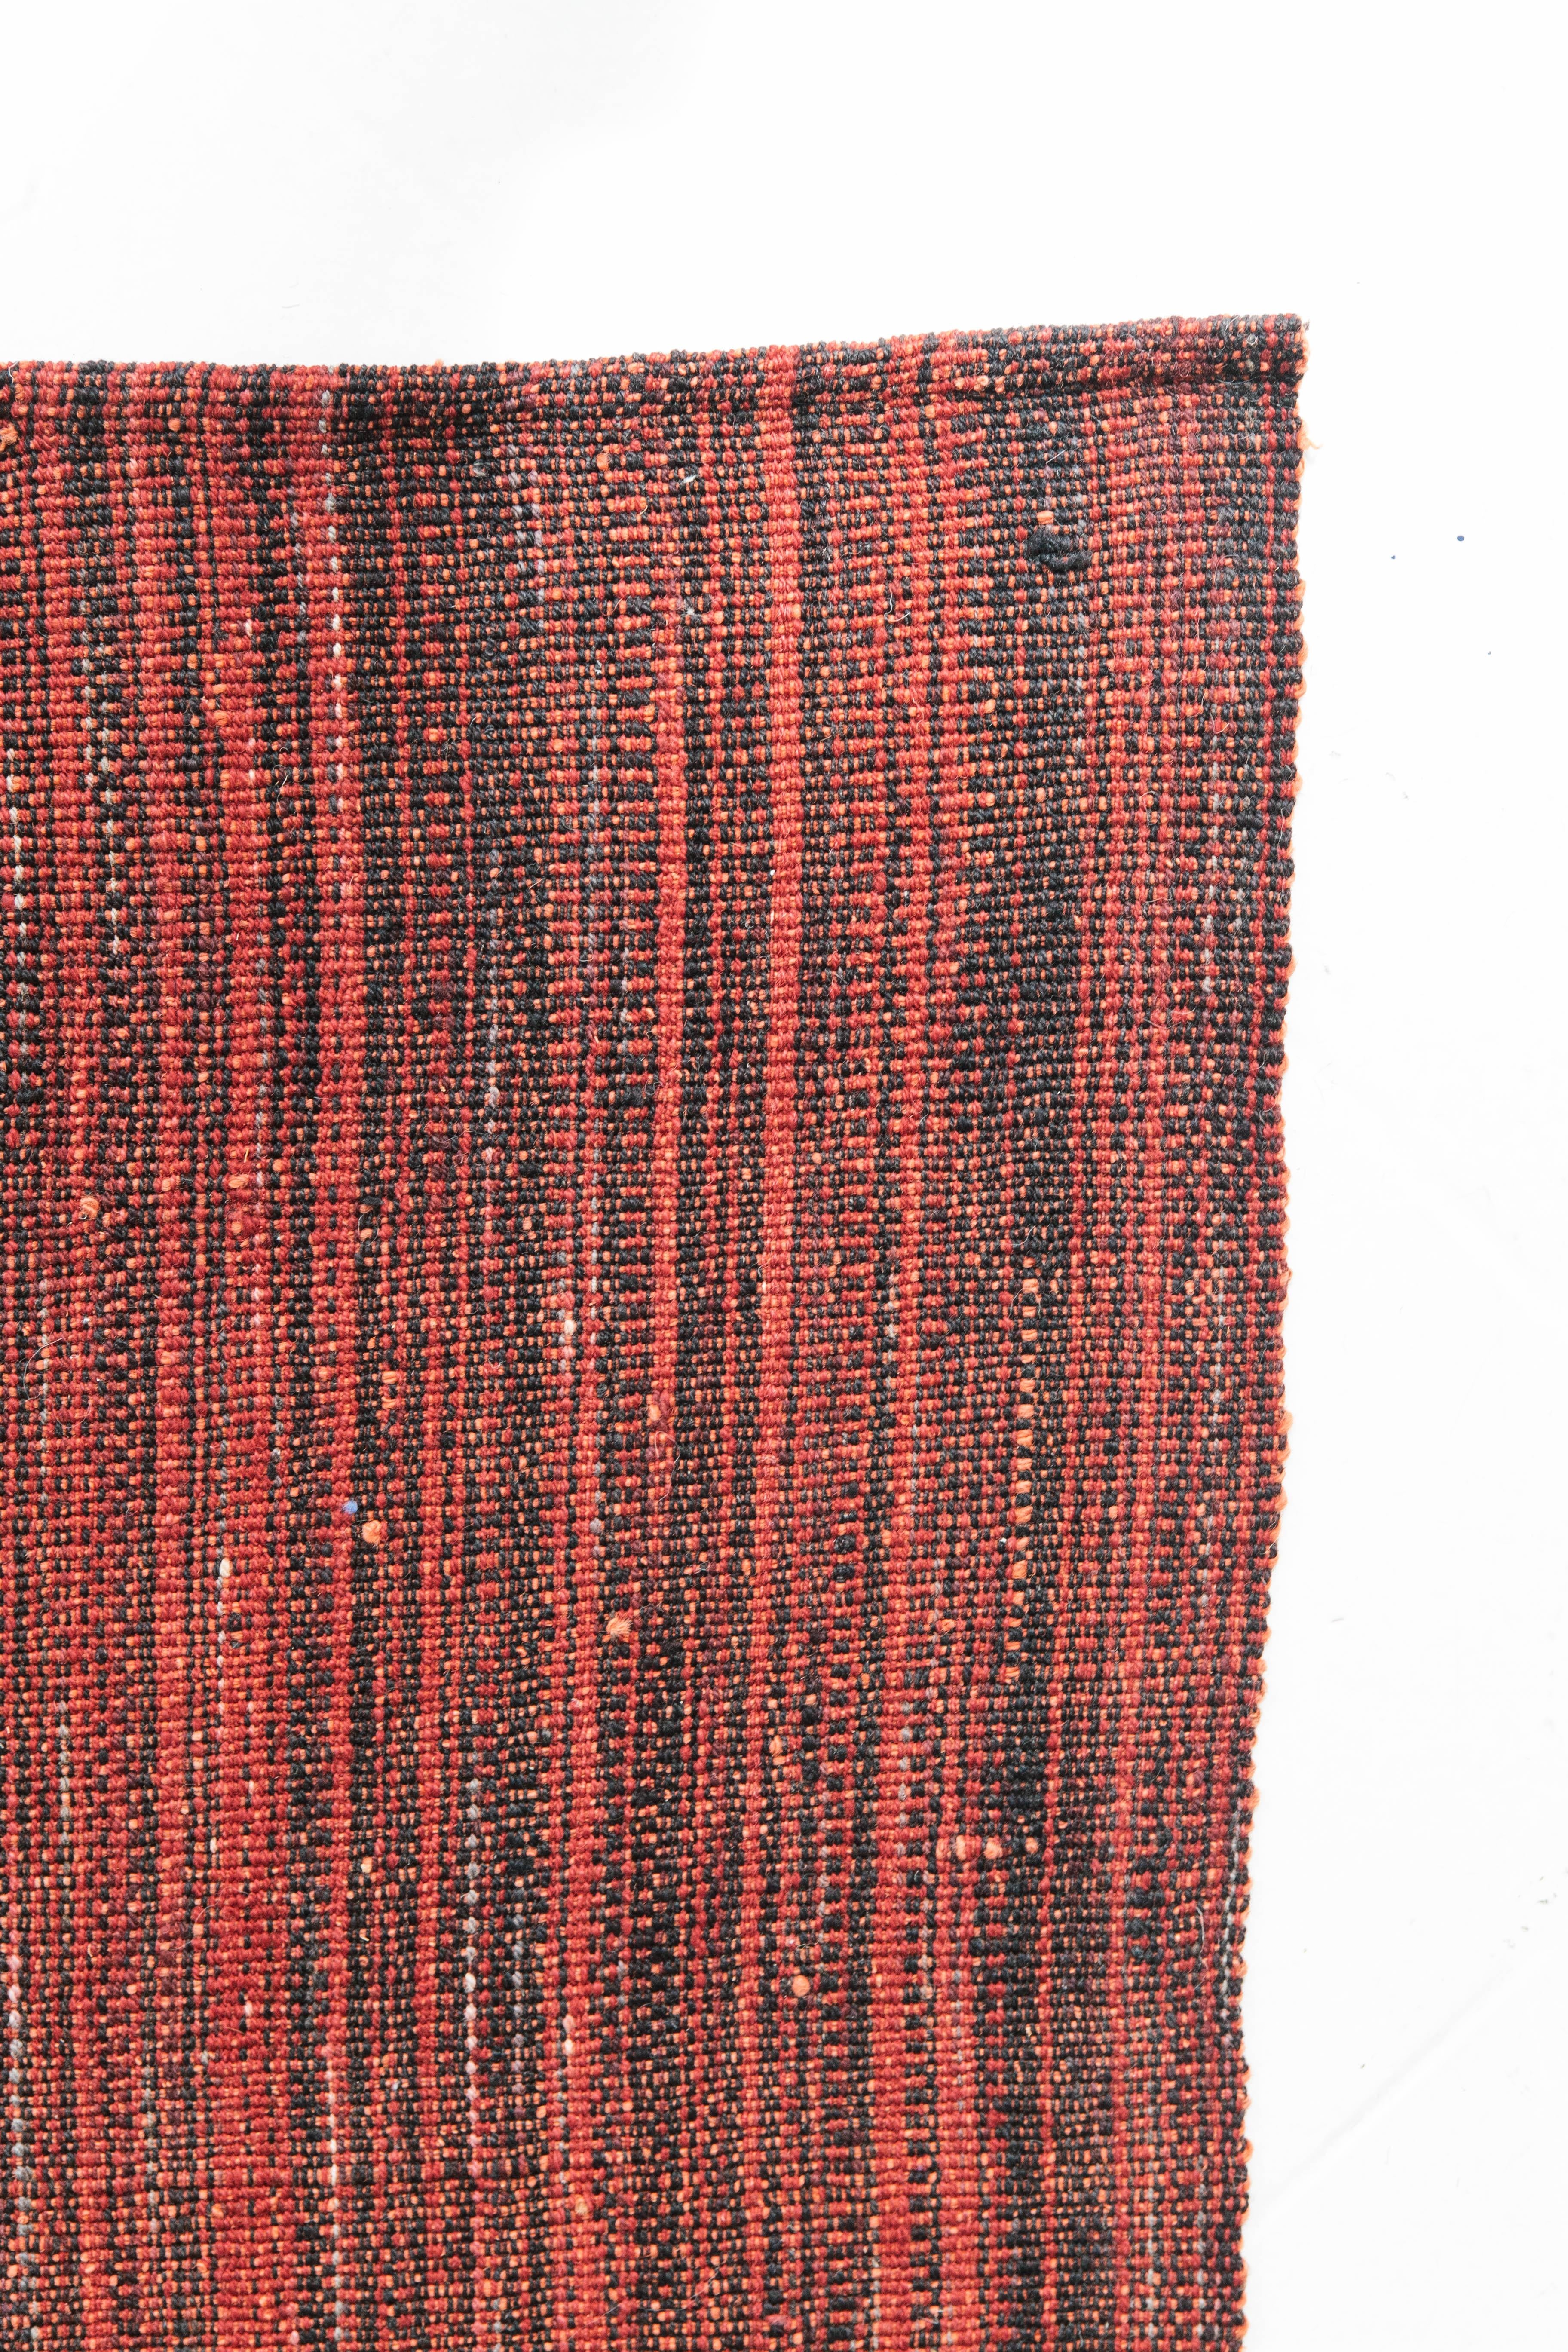 Ce tapis persan Edel Kilim à tissage plat est sophistiqué, compliqué et pourtant simpliste. Un magnifique Kilim rouge et noir qui s'adapterait parfaitement à une grande variété d'intérieurs. Les tissages plats persans sont composés d'une partie des